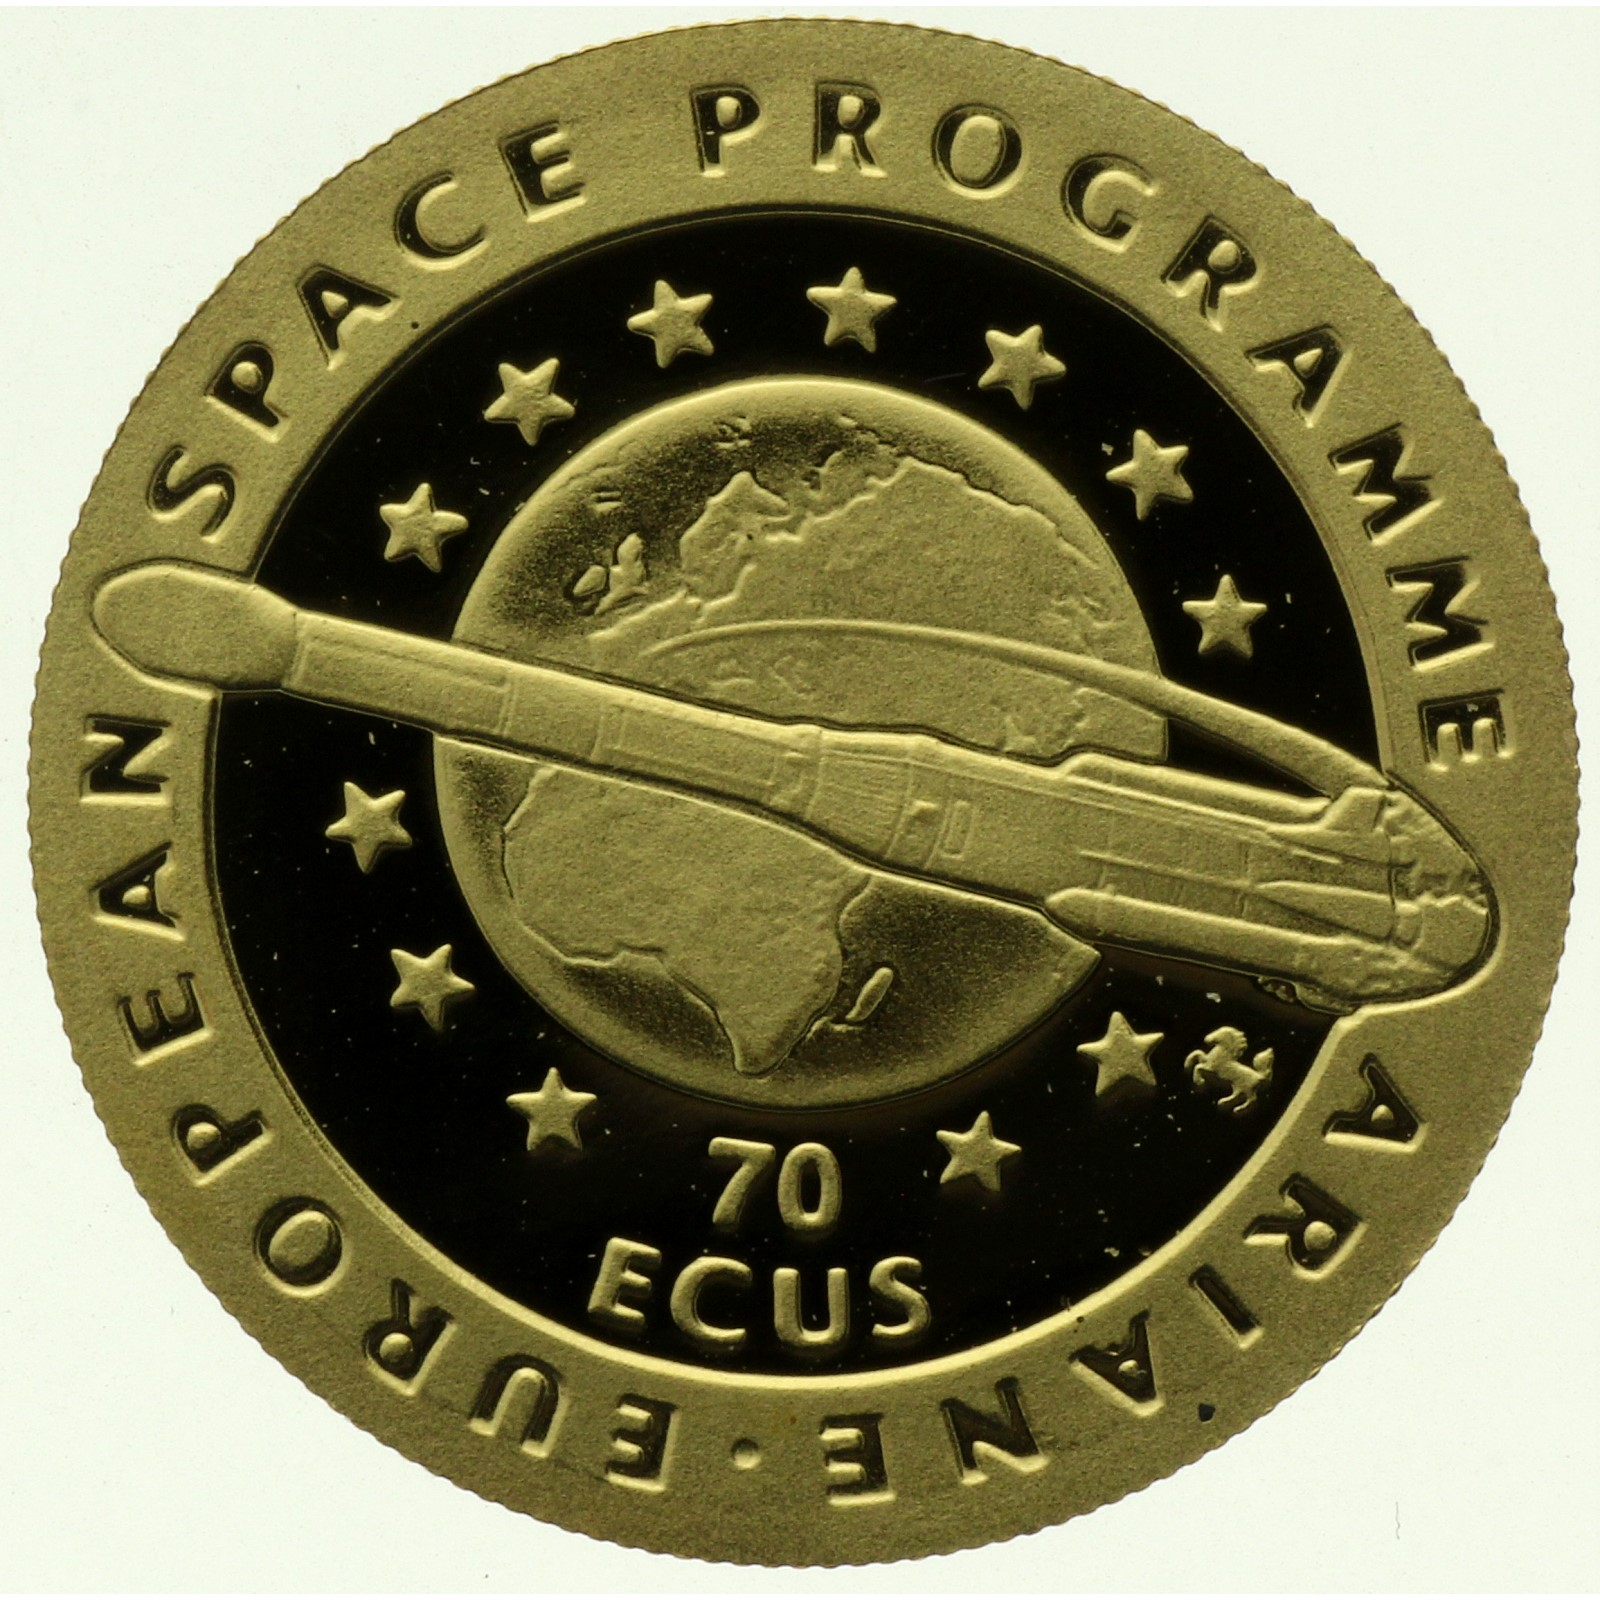 Gibraltar - 70 ecus - 1994 - European Space Programme